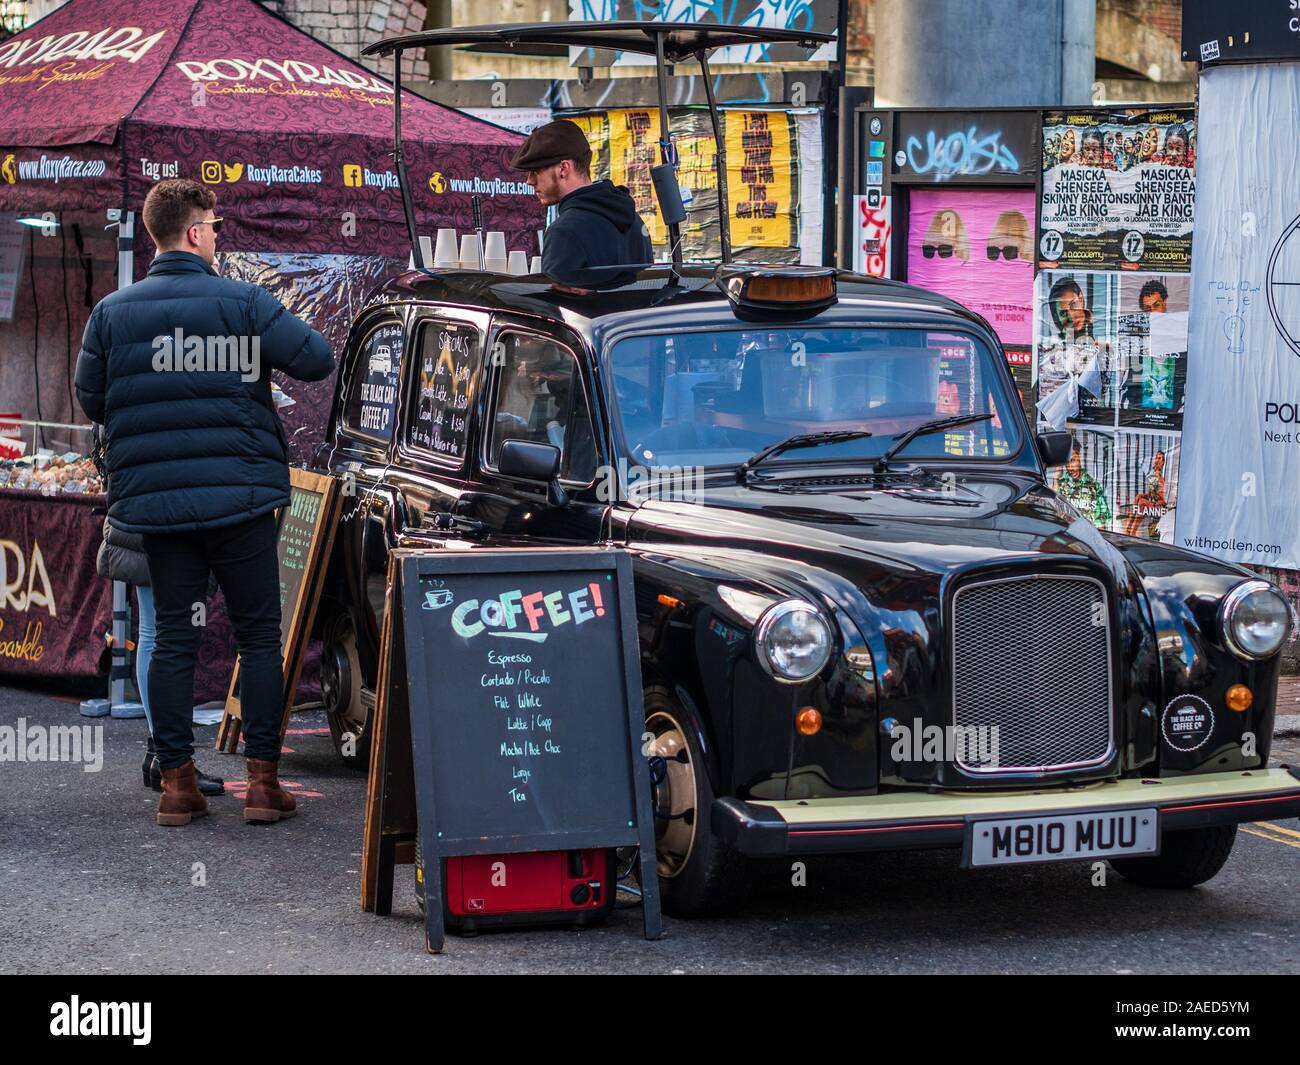 London Taxi Kaffee - Black Cab/Unternehmen verwendet ein umgebautes Londoner Taxi Kaffee in Brick Lane Shoreditch East London zu dienen. Stockfoto